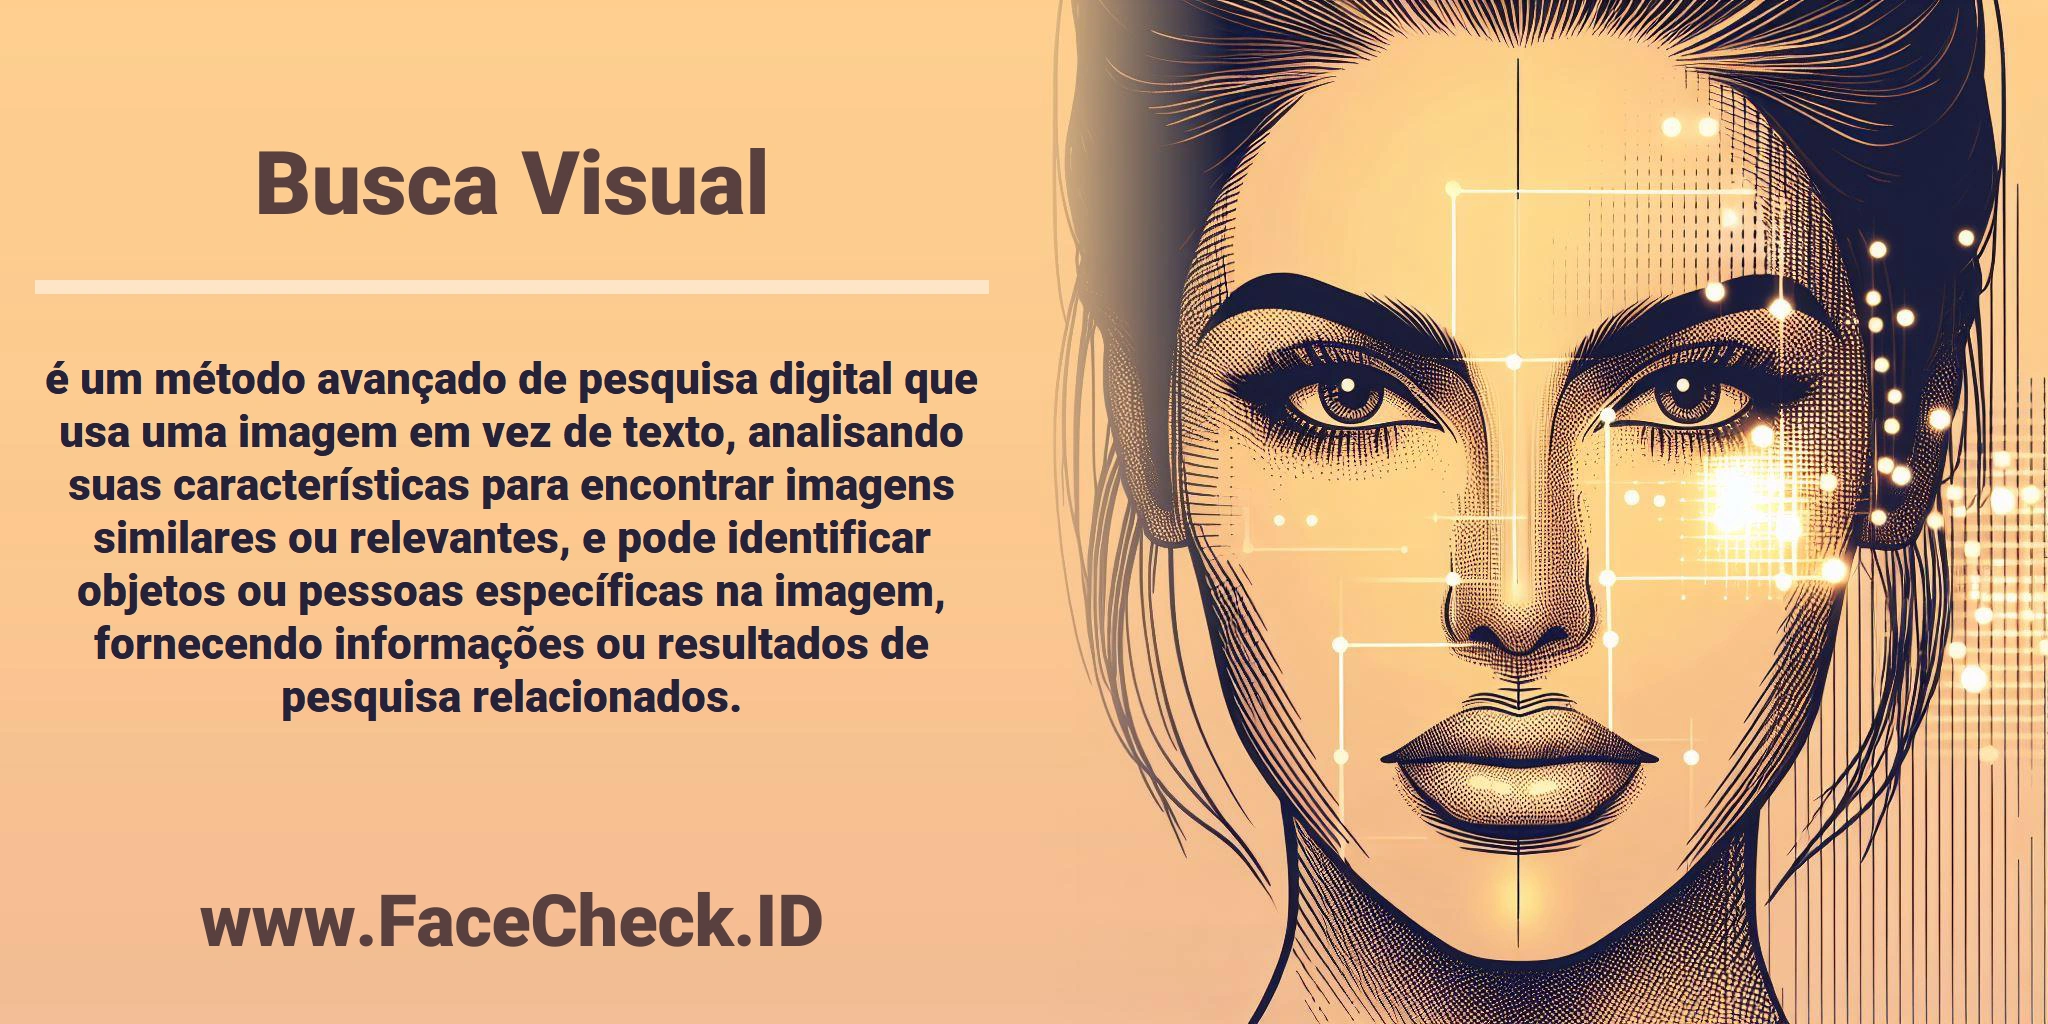 <b>Busca Visual</b> é um método avançado de pesquisa digital que usa uma imagem em vez de texto, analisando suas características para encontrar imagens similares ou relevantes, e pode identificar objetos ou pessoas específicas na imagem, fornecendo informações ou resultados de pesquisa relacionados.